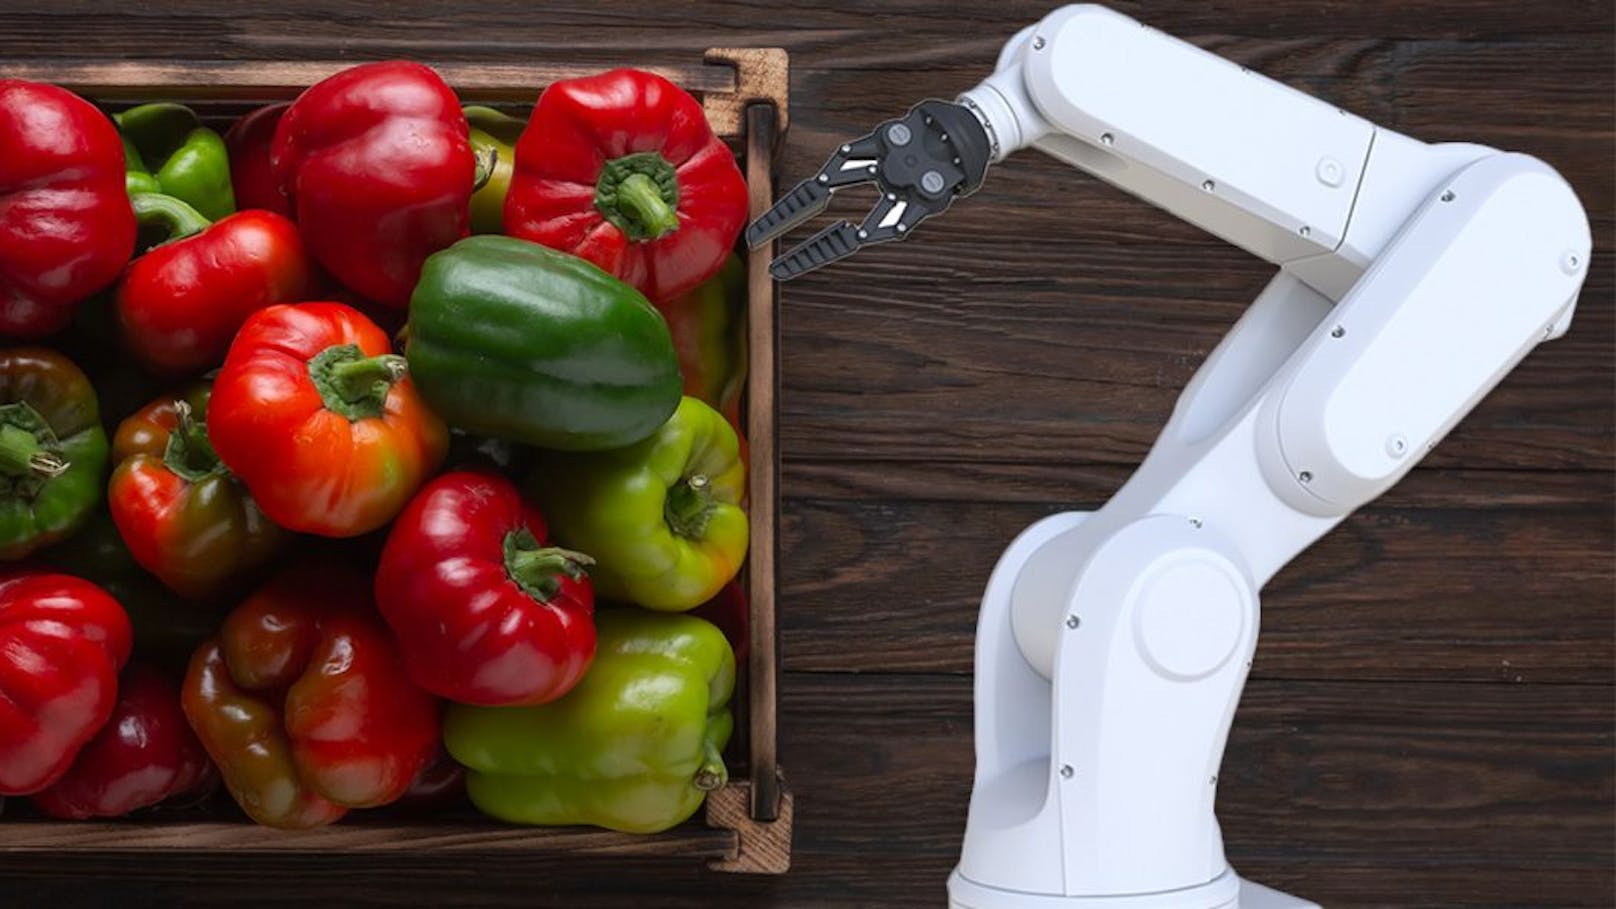 Mit Gemüse verwechselt – Roboter tötet Fabrikarbeiter